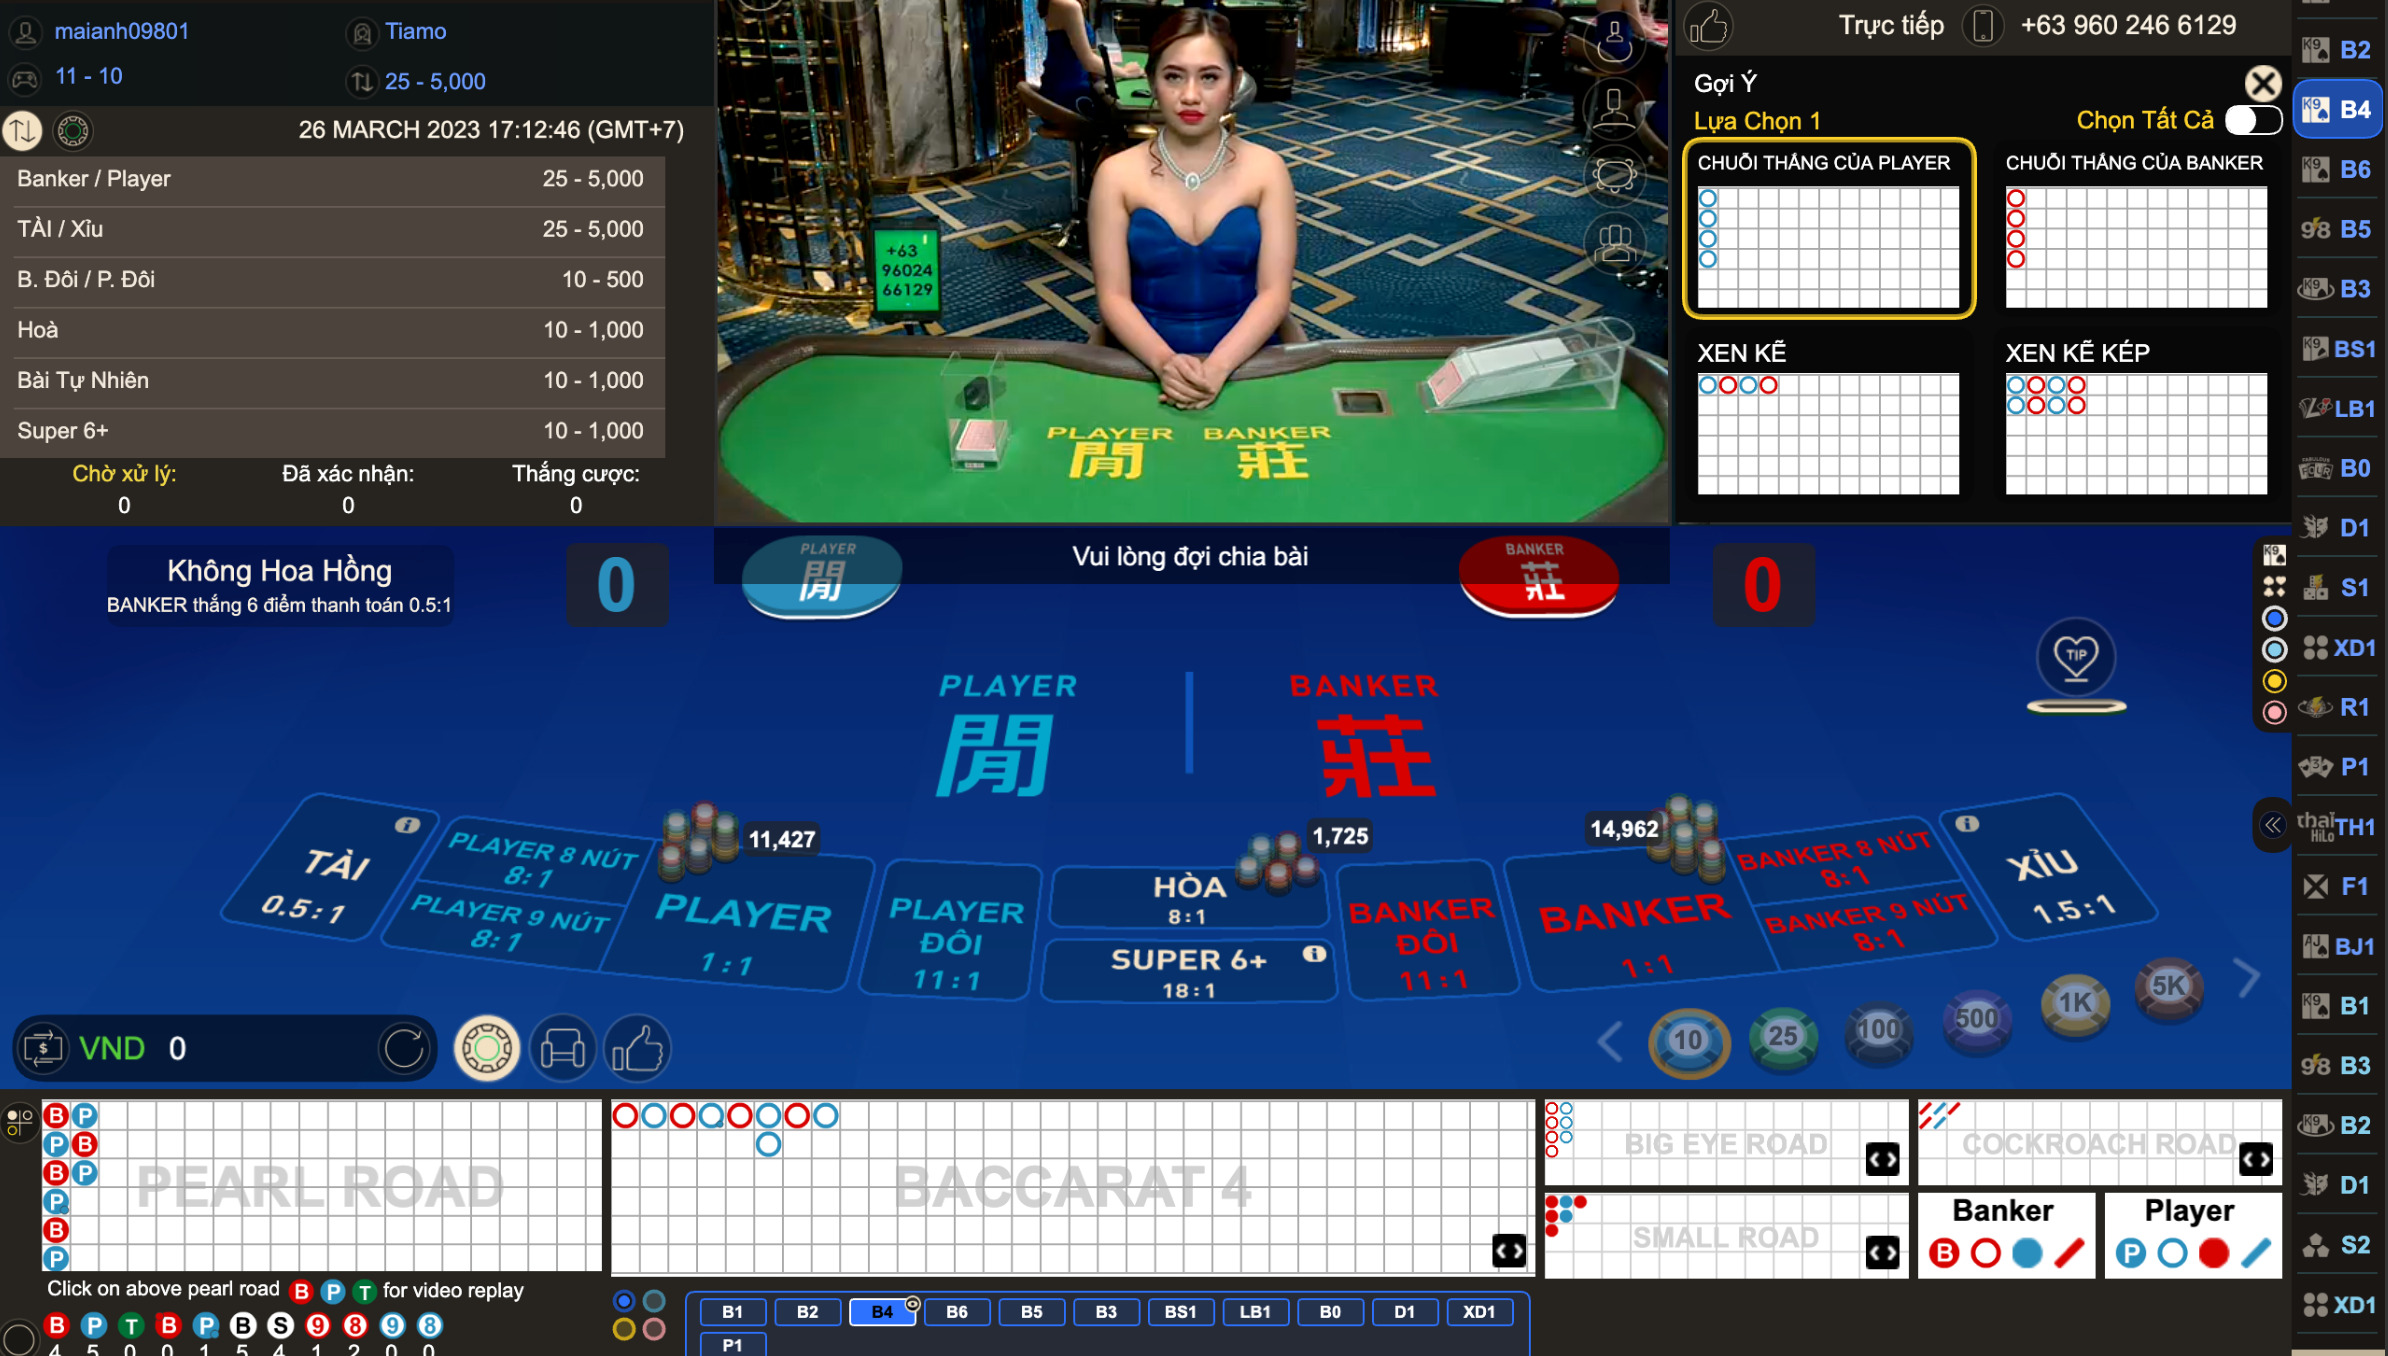 Cách chơi Baccarat tại sòng casino W Grand W88 như thế nào?